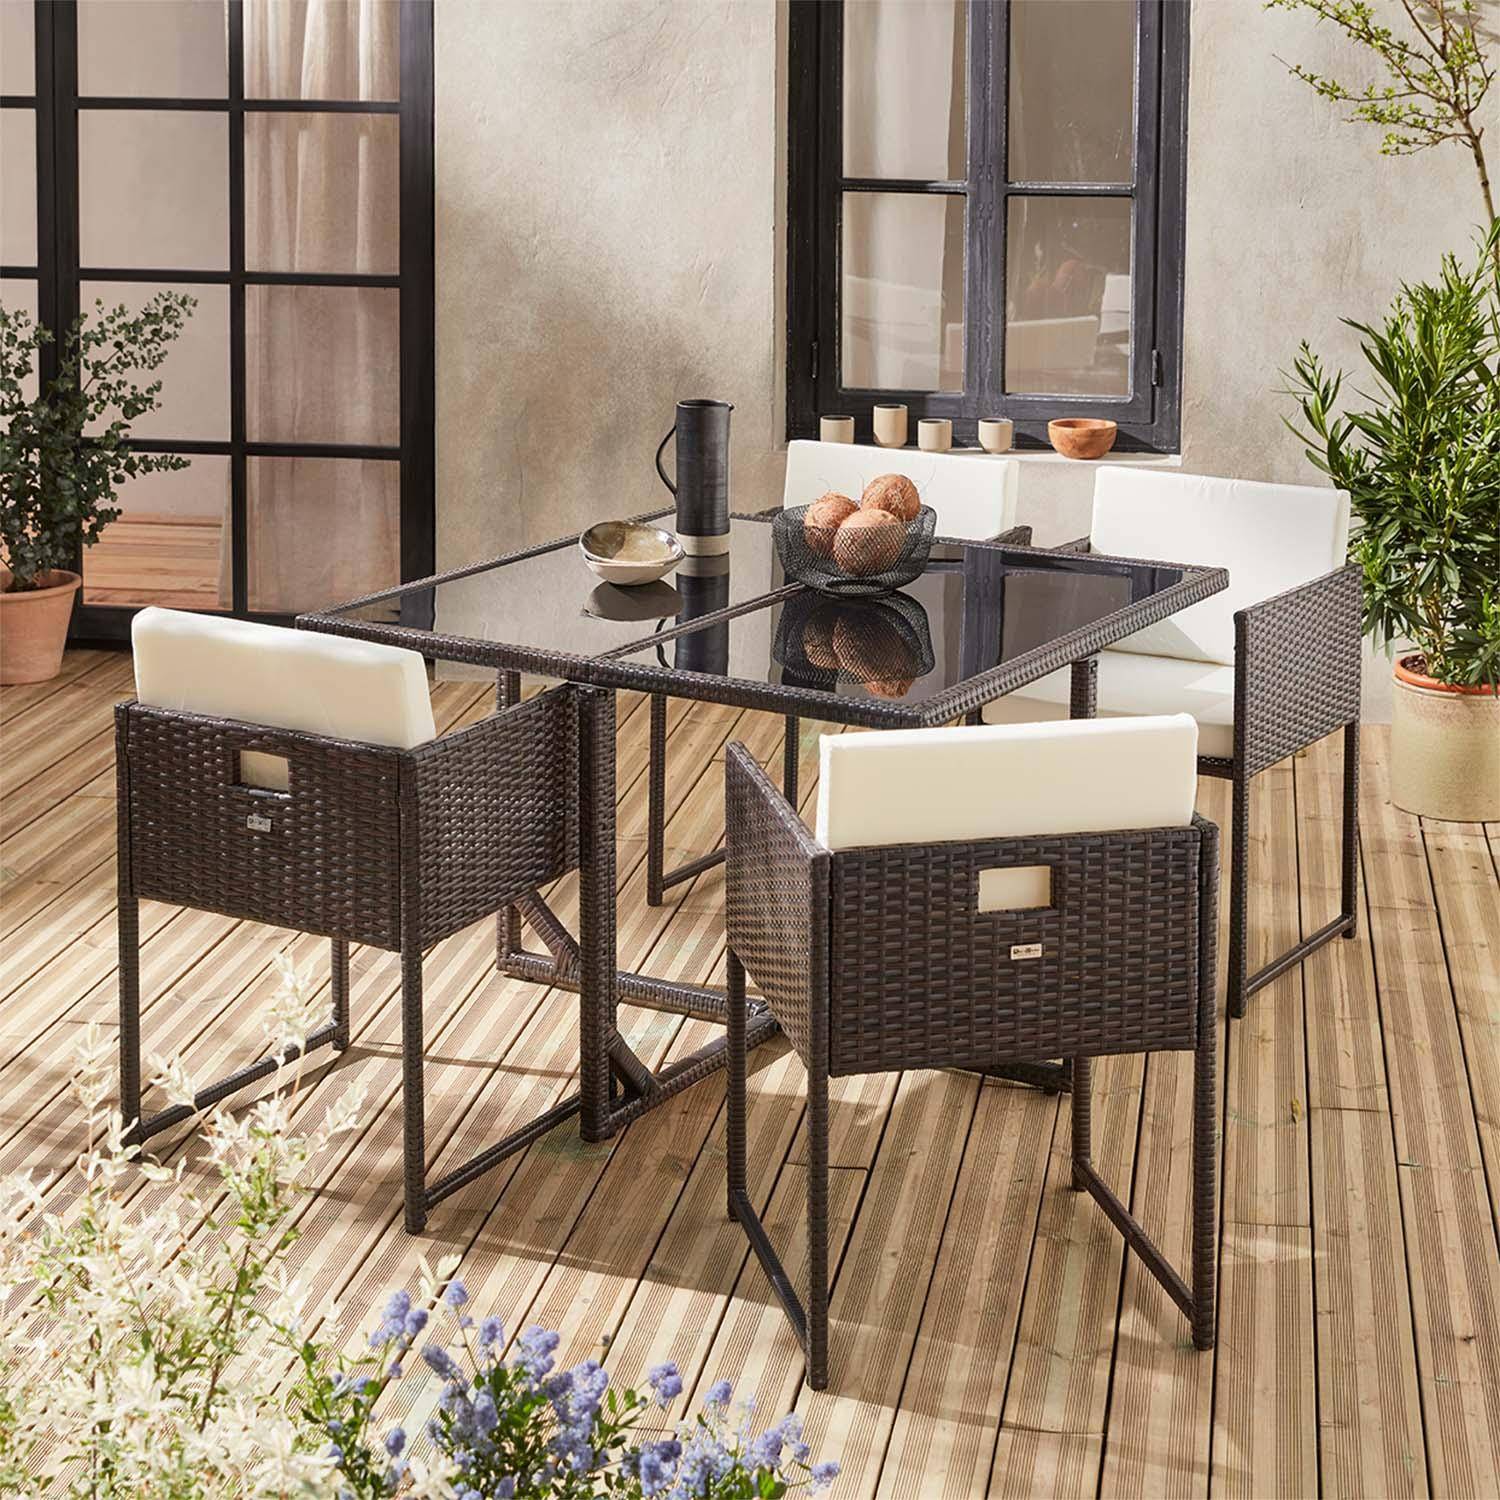 Gartenmöbel aus geflochtenem Harz für 4 Personen - FIRENZE 4 - braune Farbe, weiße Kissen, eingebauter Tisch Photo1